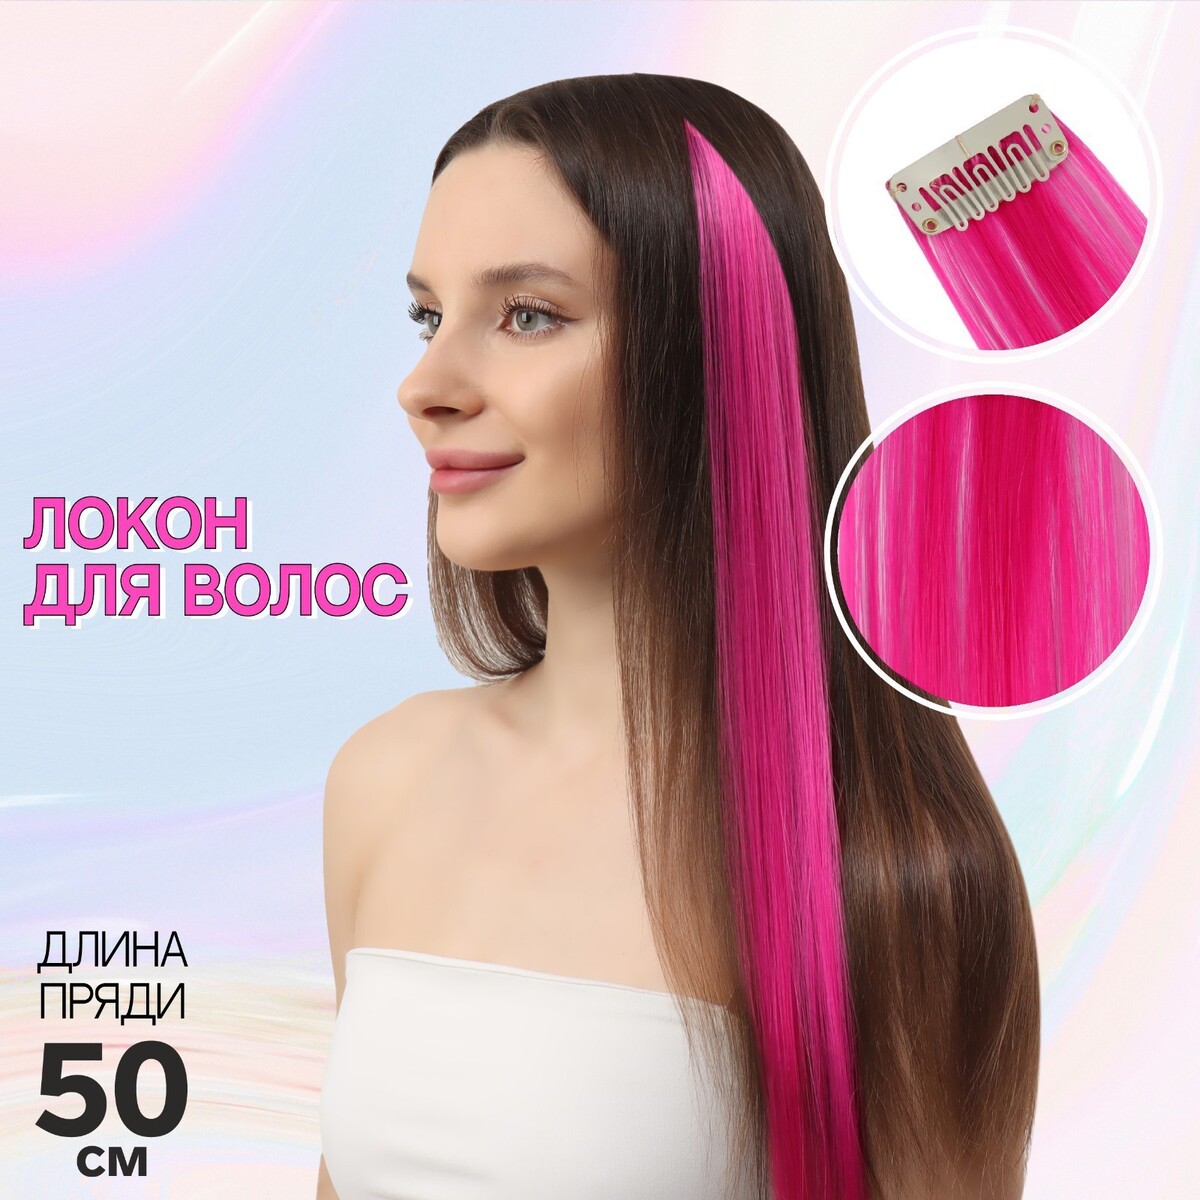 Локон накладной, прямой волос, на заколке, 50 см, 5 гр, цвет розовый локон накладной прямой волос на заколке 50 см 5 гр тёмно русый